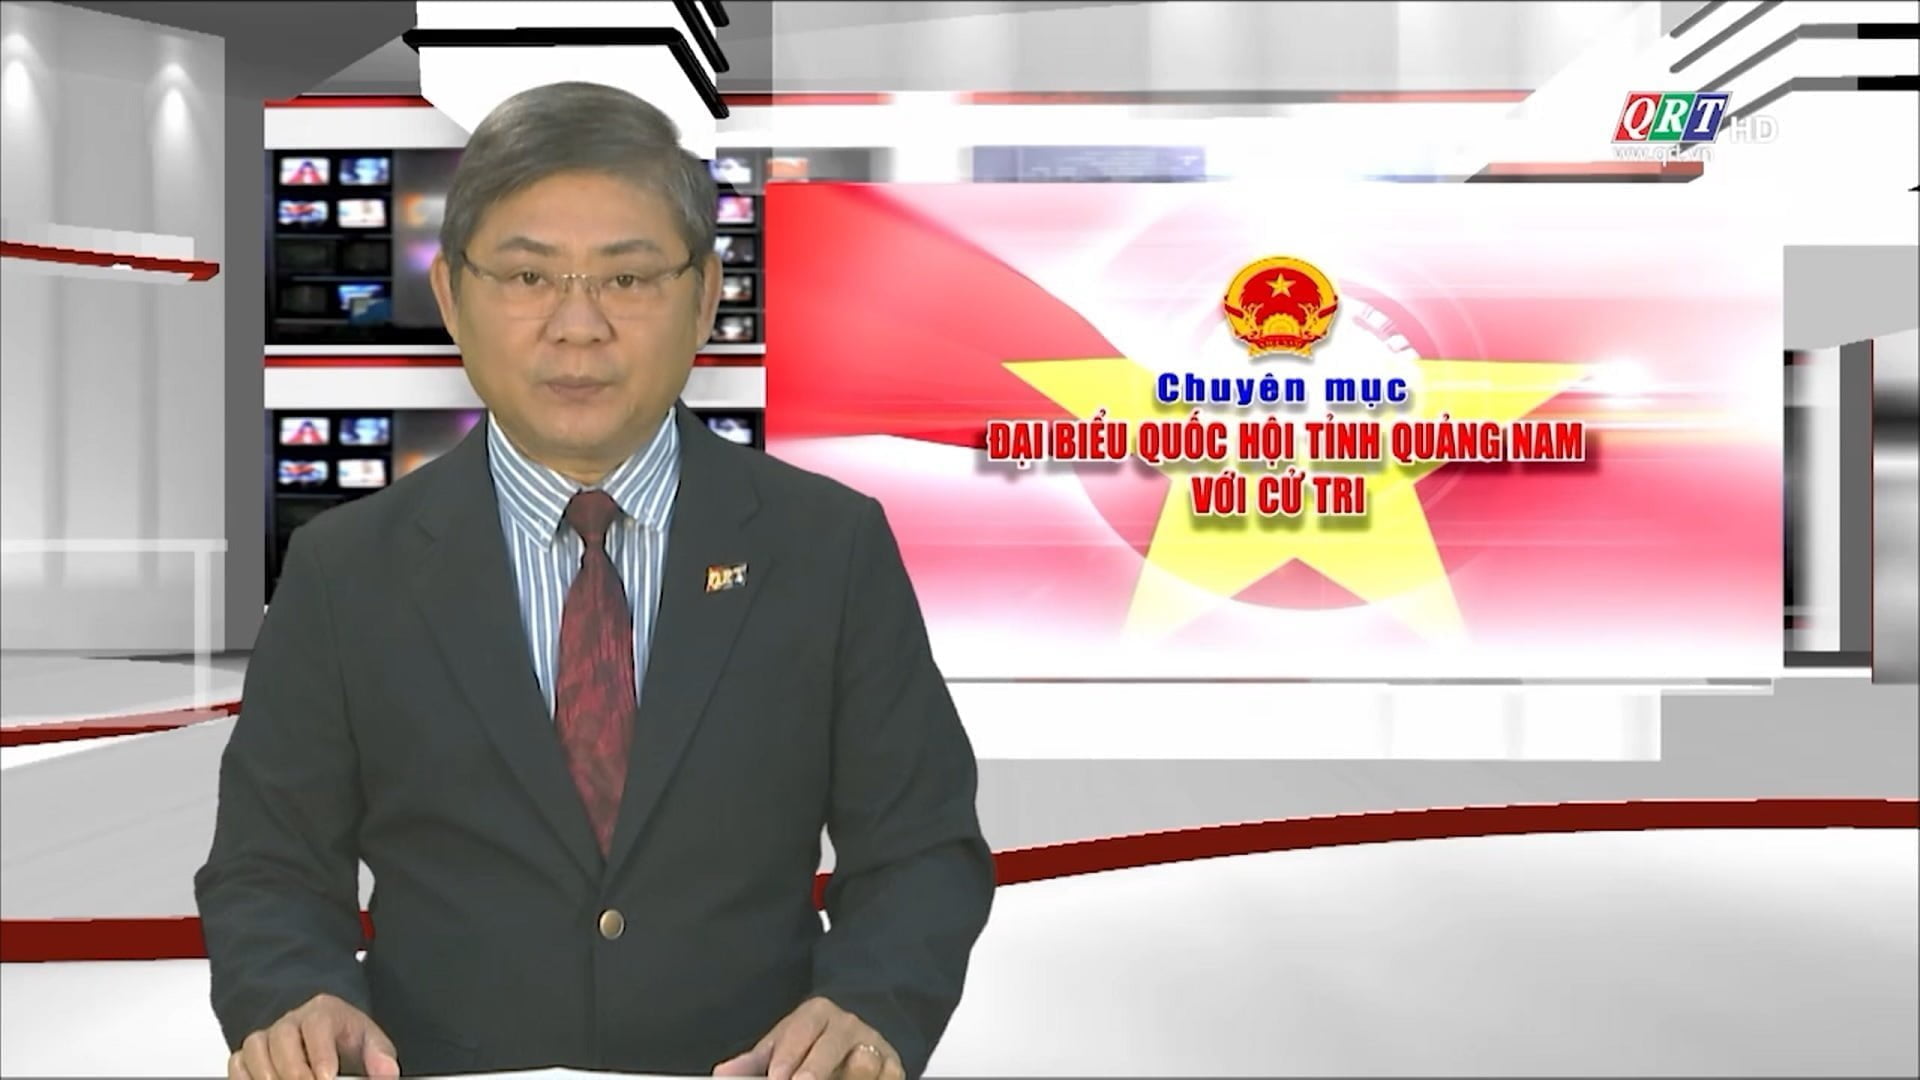 Đại biểu Quốc hội tỉnh Quảng Nam với cử tri (01-01-2023) - Đài Phát